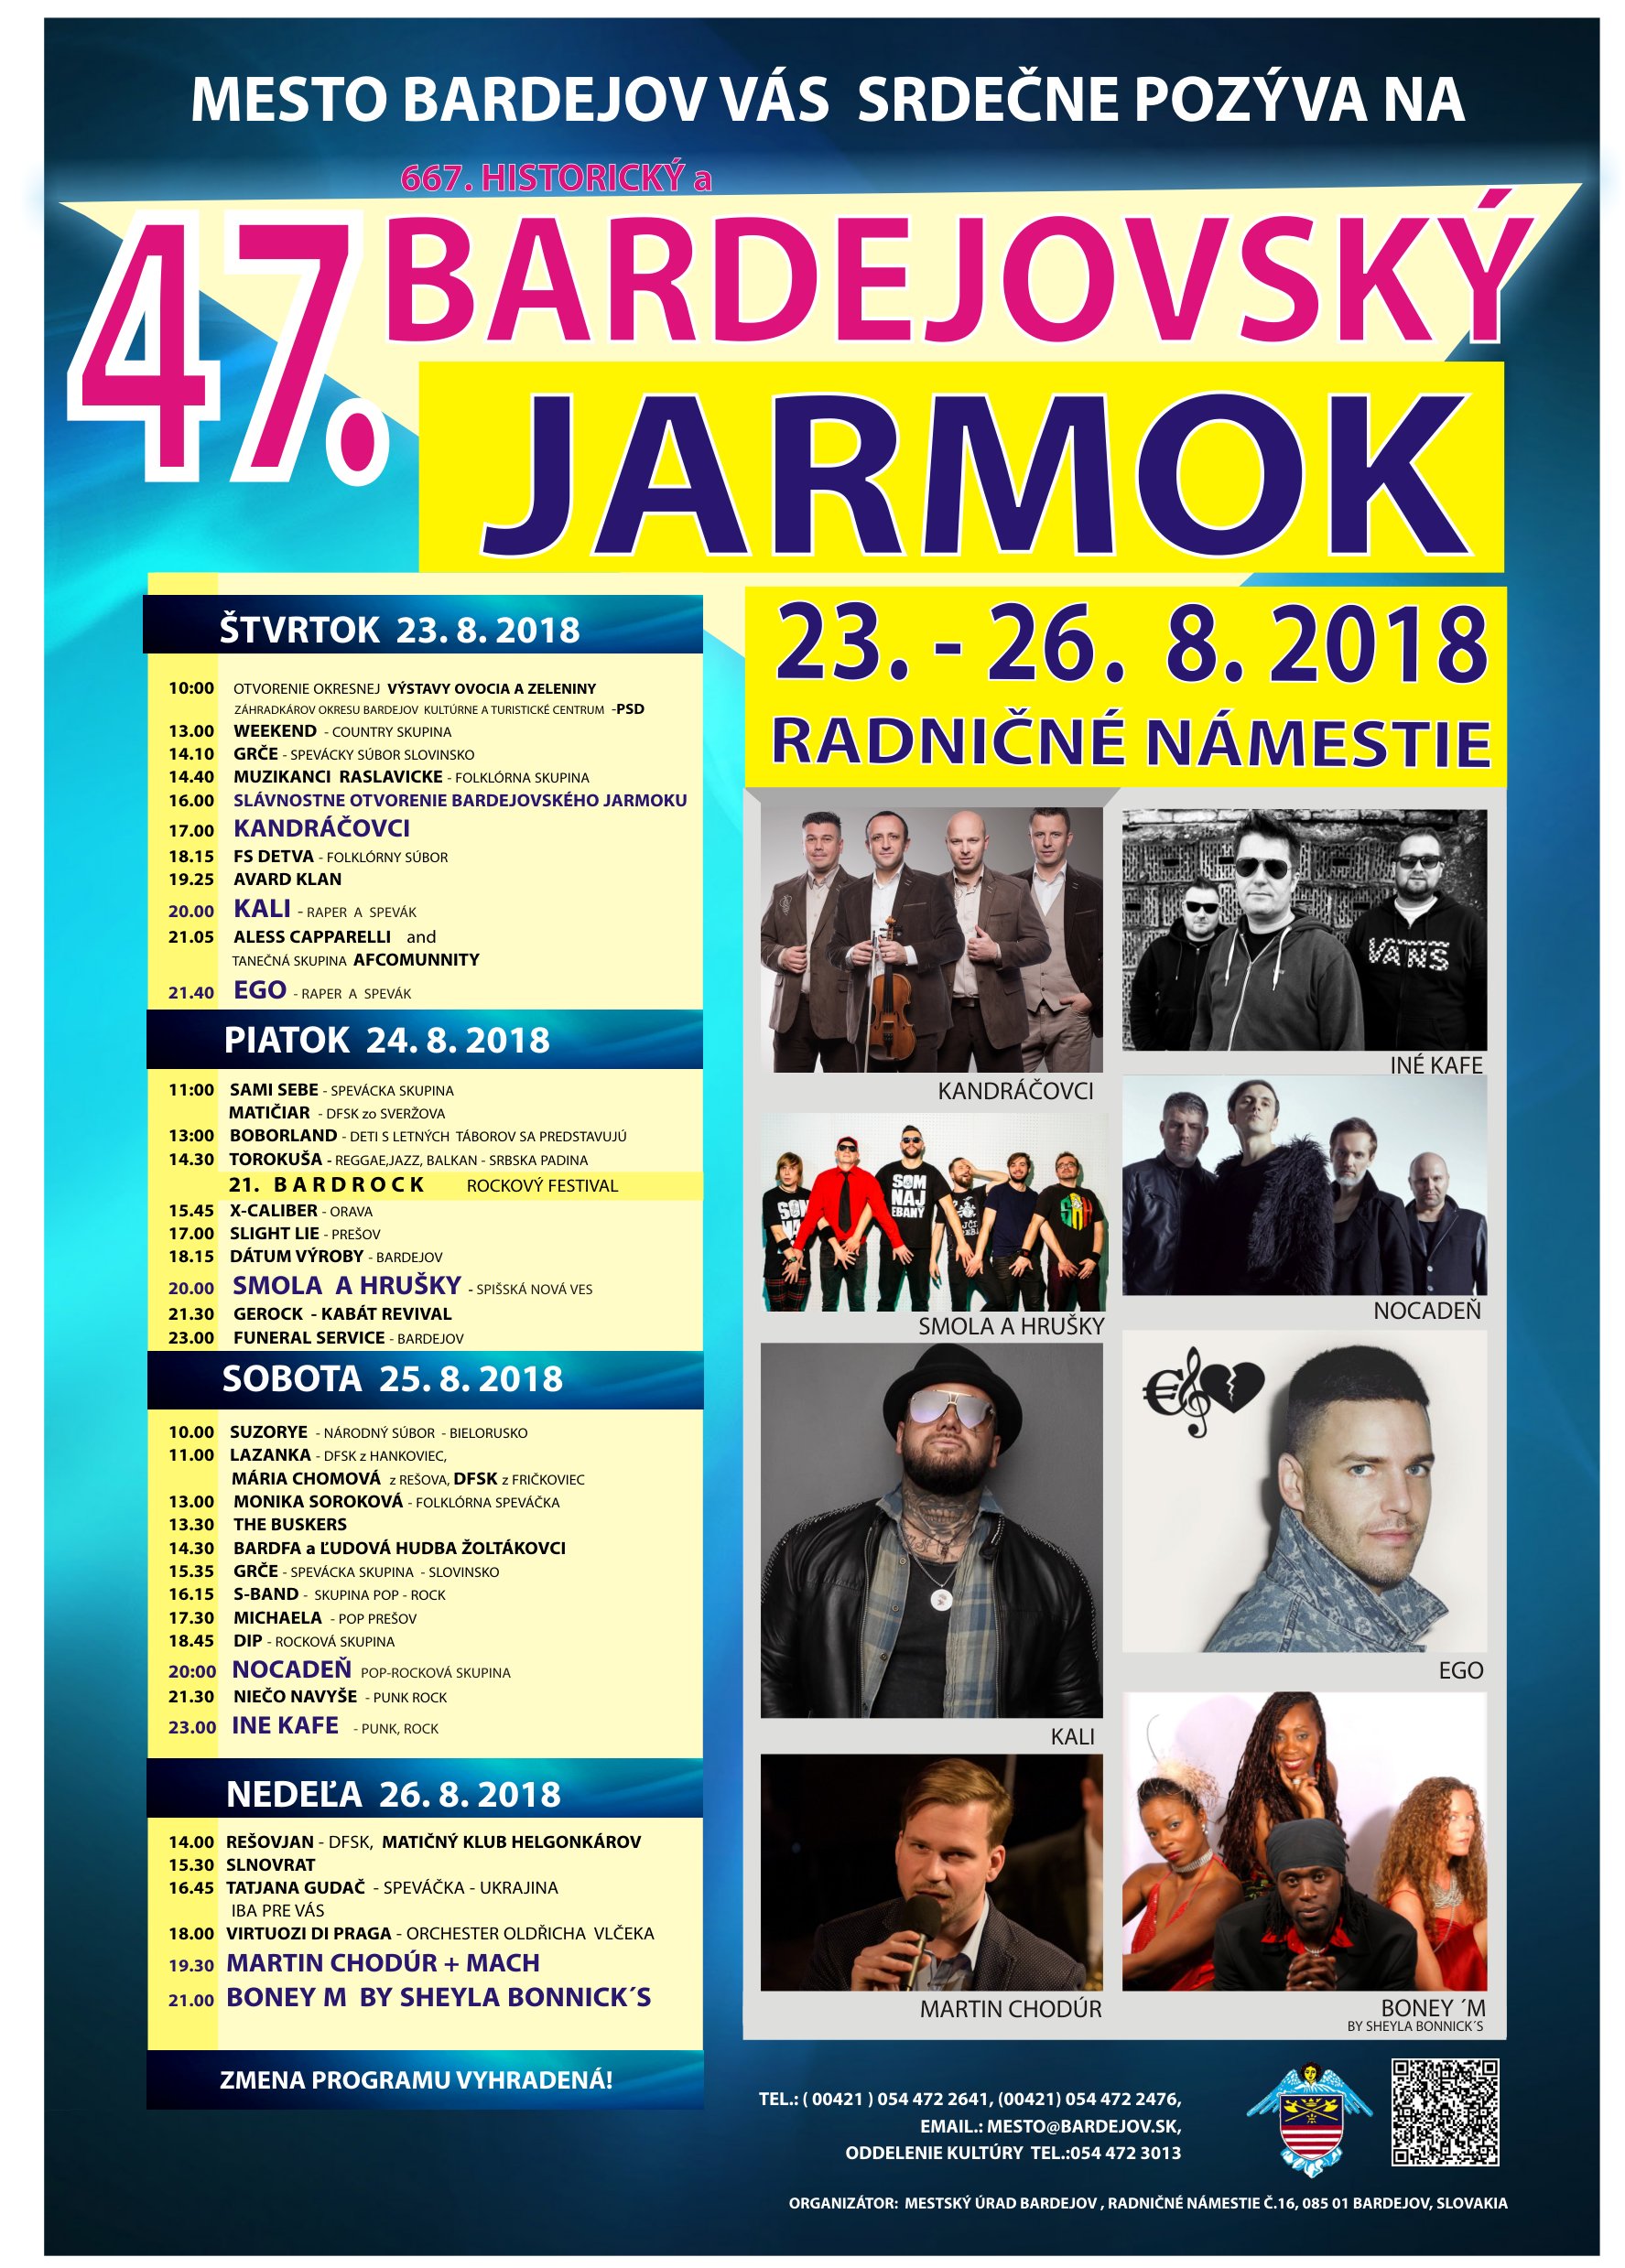 Bardejovsk jarmok 2018